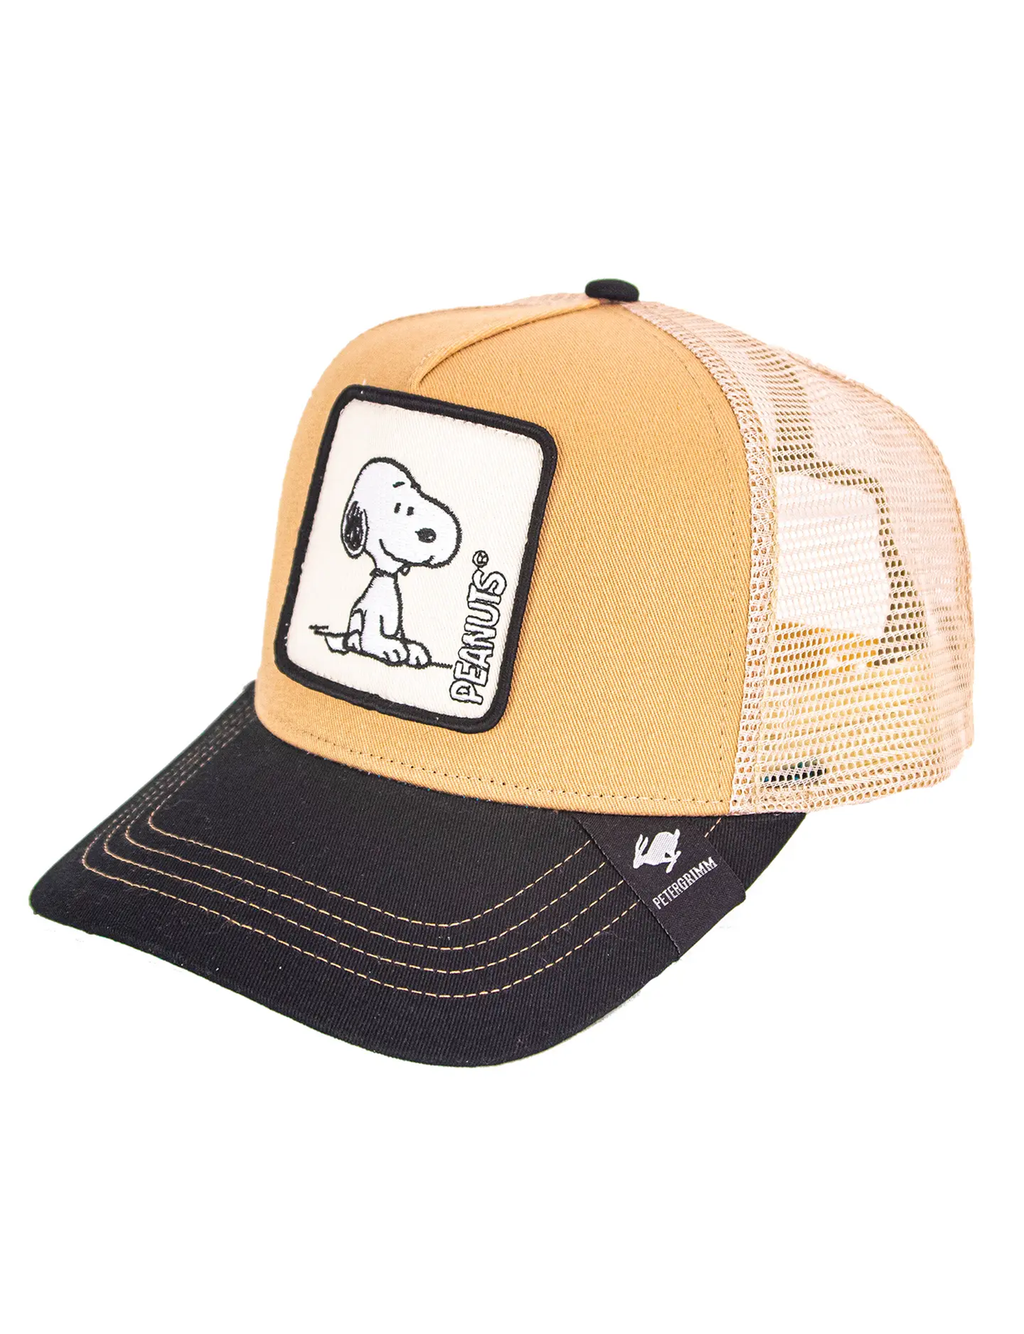 Peanuts Mesh Trucker Hat, Snoopy